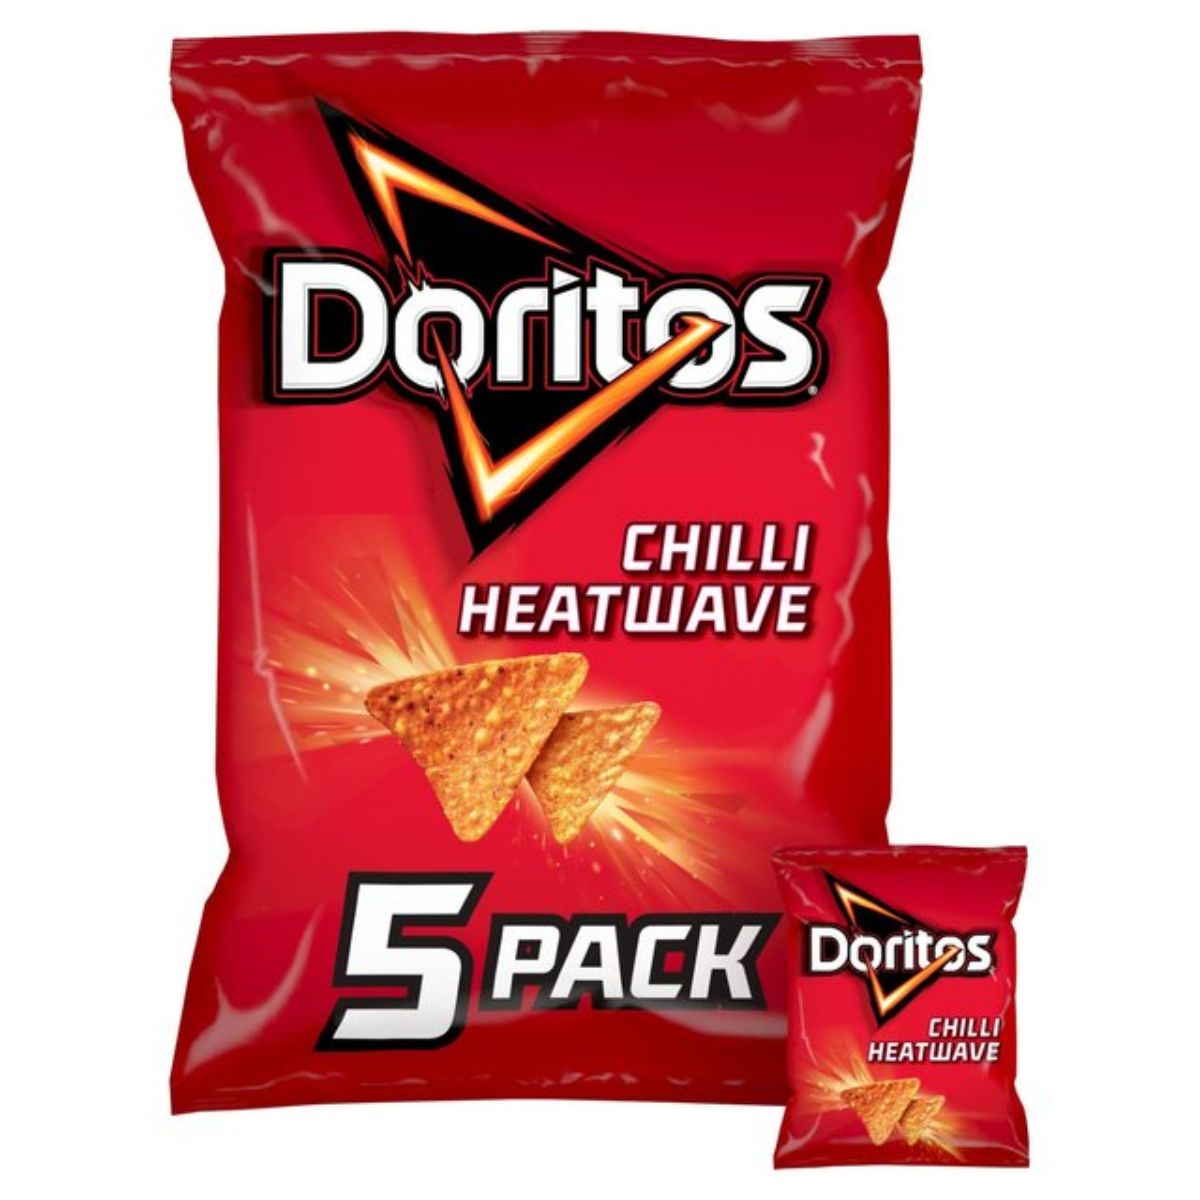 Doritos - Chilli Heatwave - 5 pack